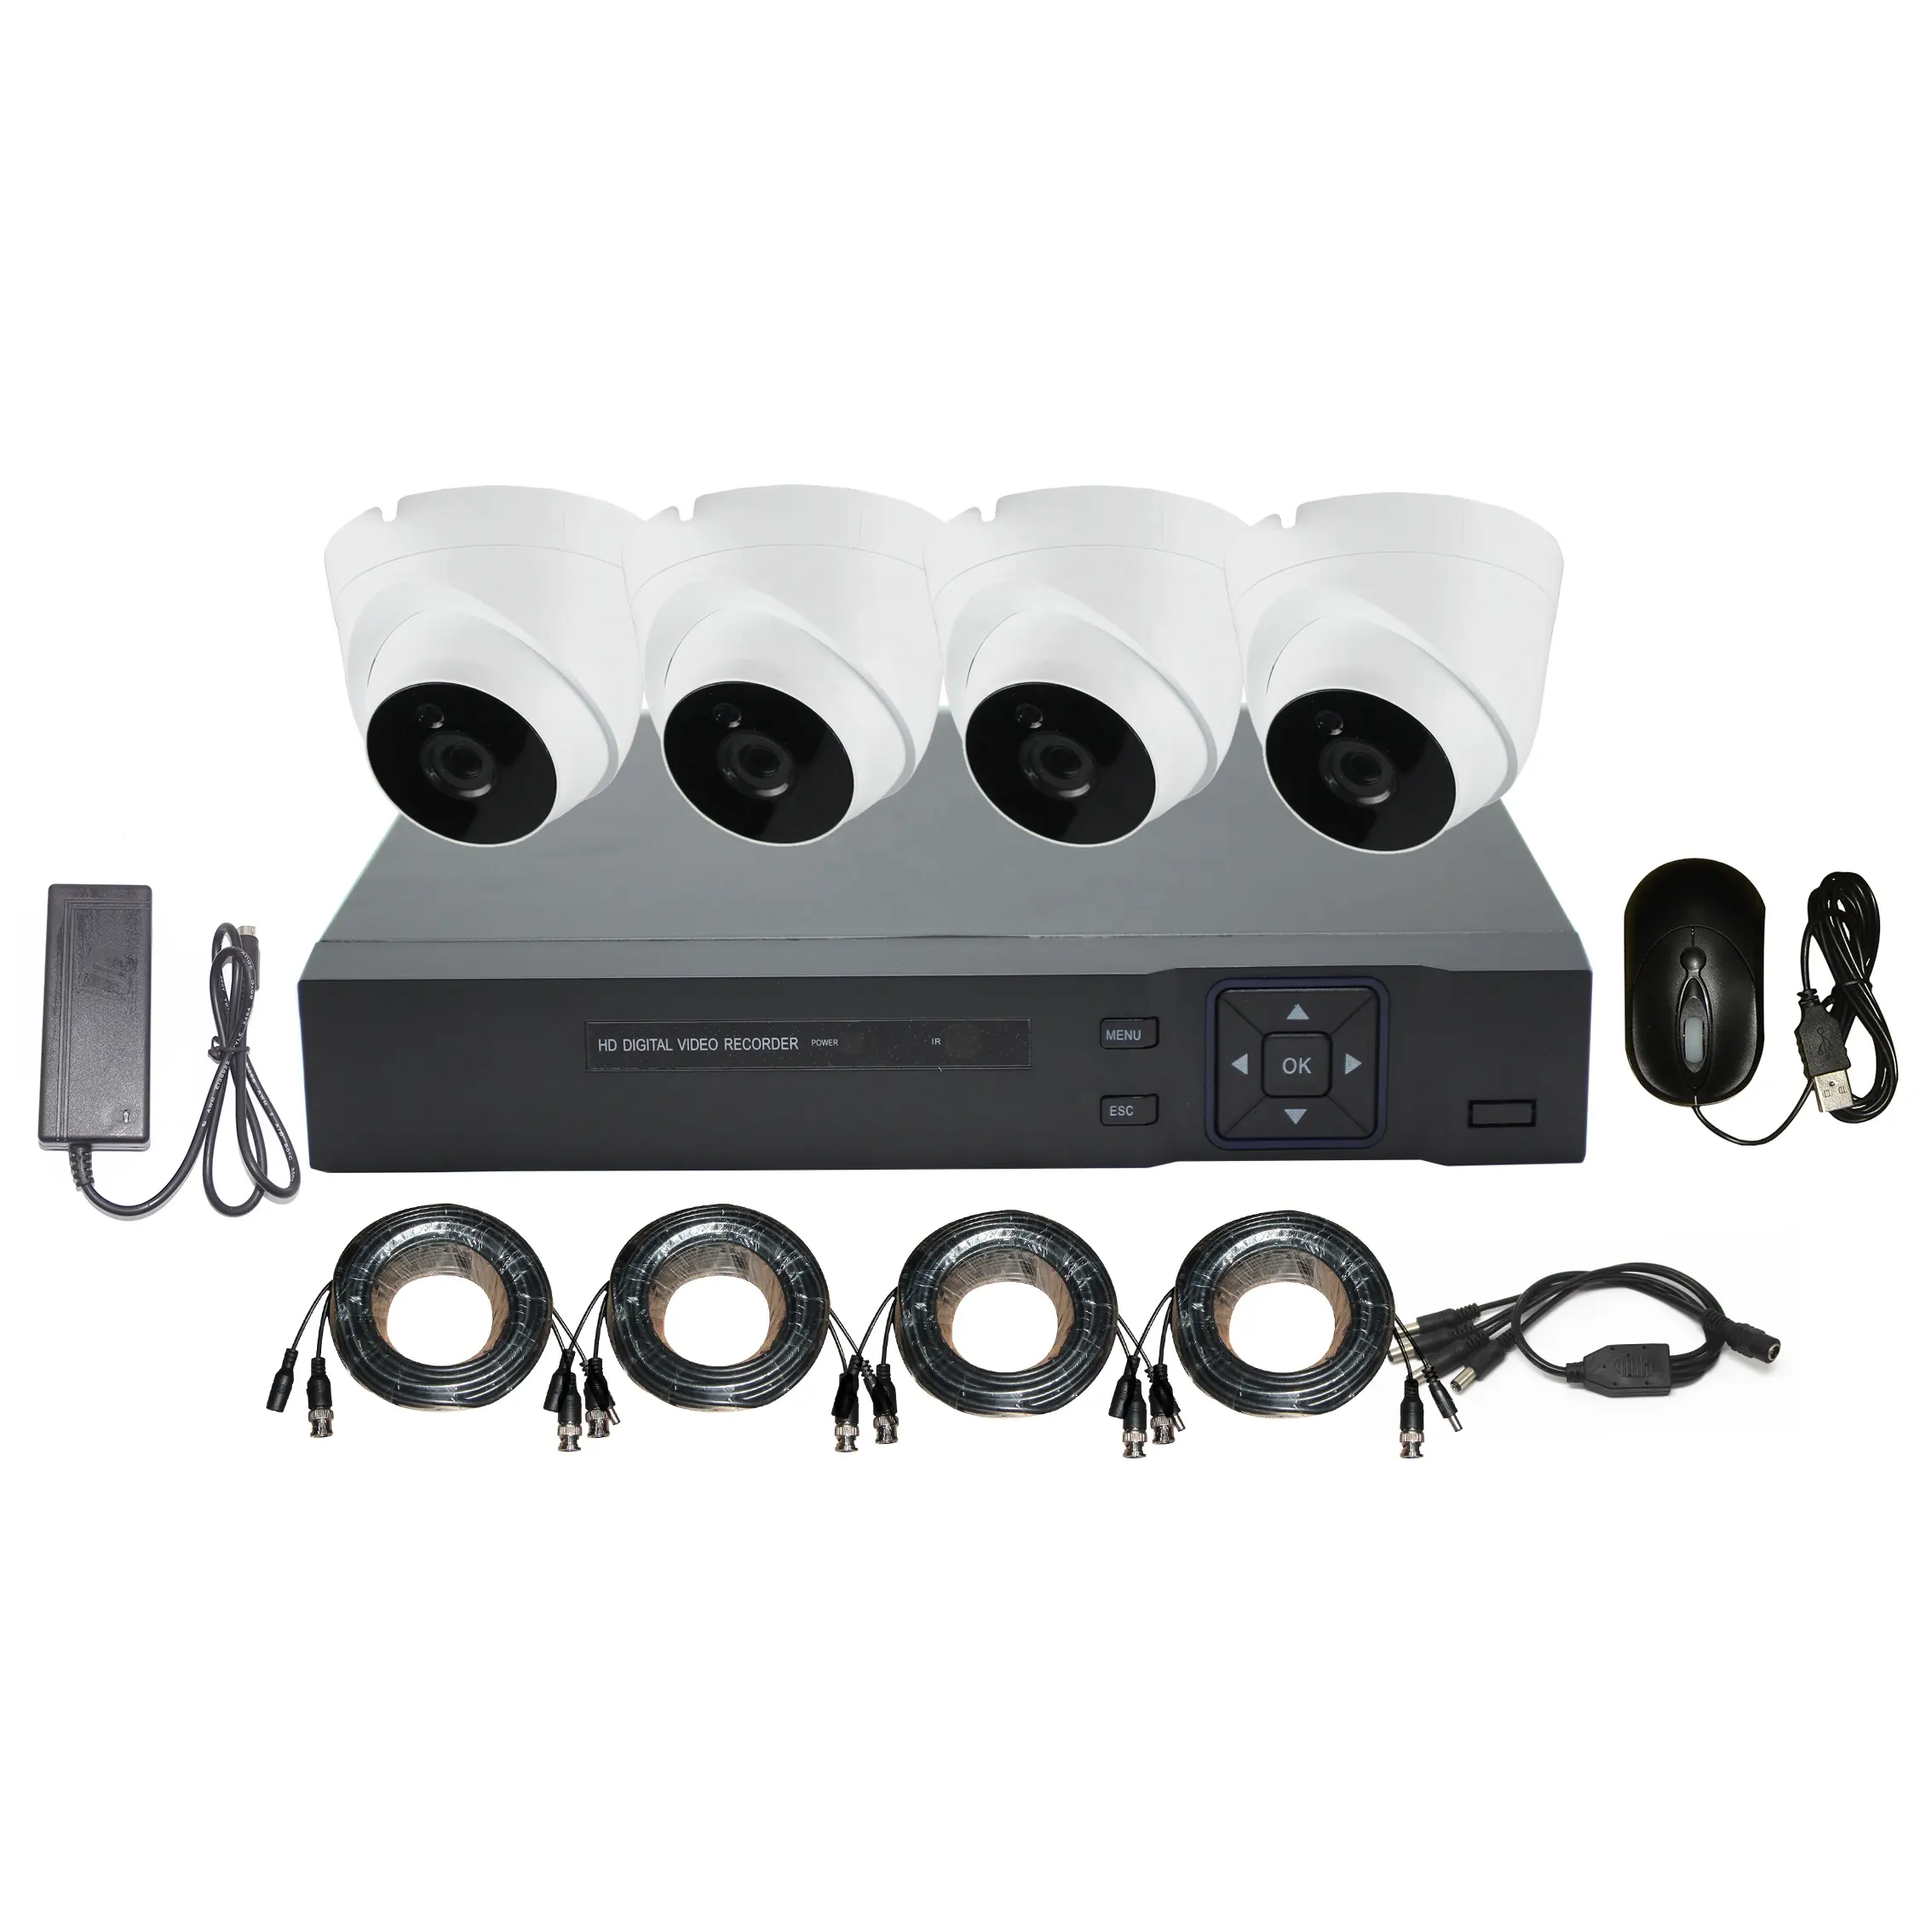 DVR Kit với 4 cái HD 2MP 5MP máy ảnh có dây DVR Kit cho dễ dàng thiết lập và cài đặt DVR Recorder Kit